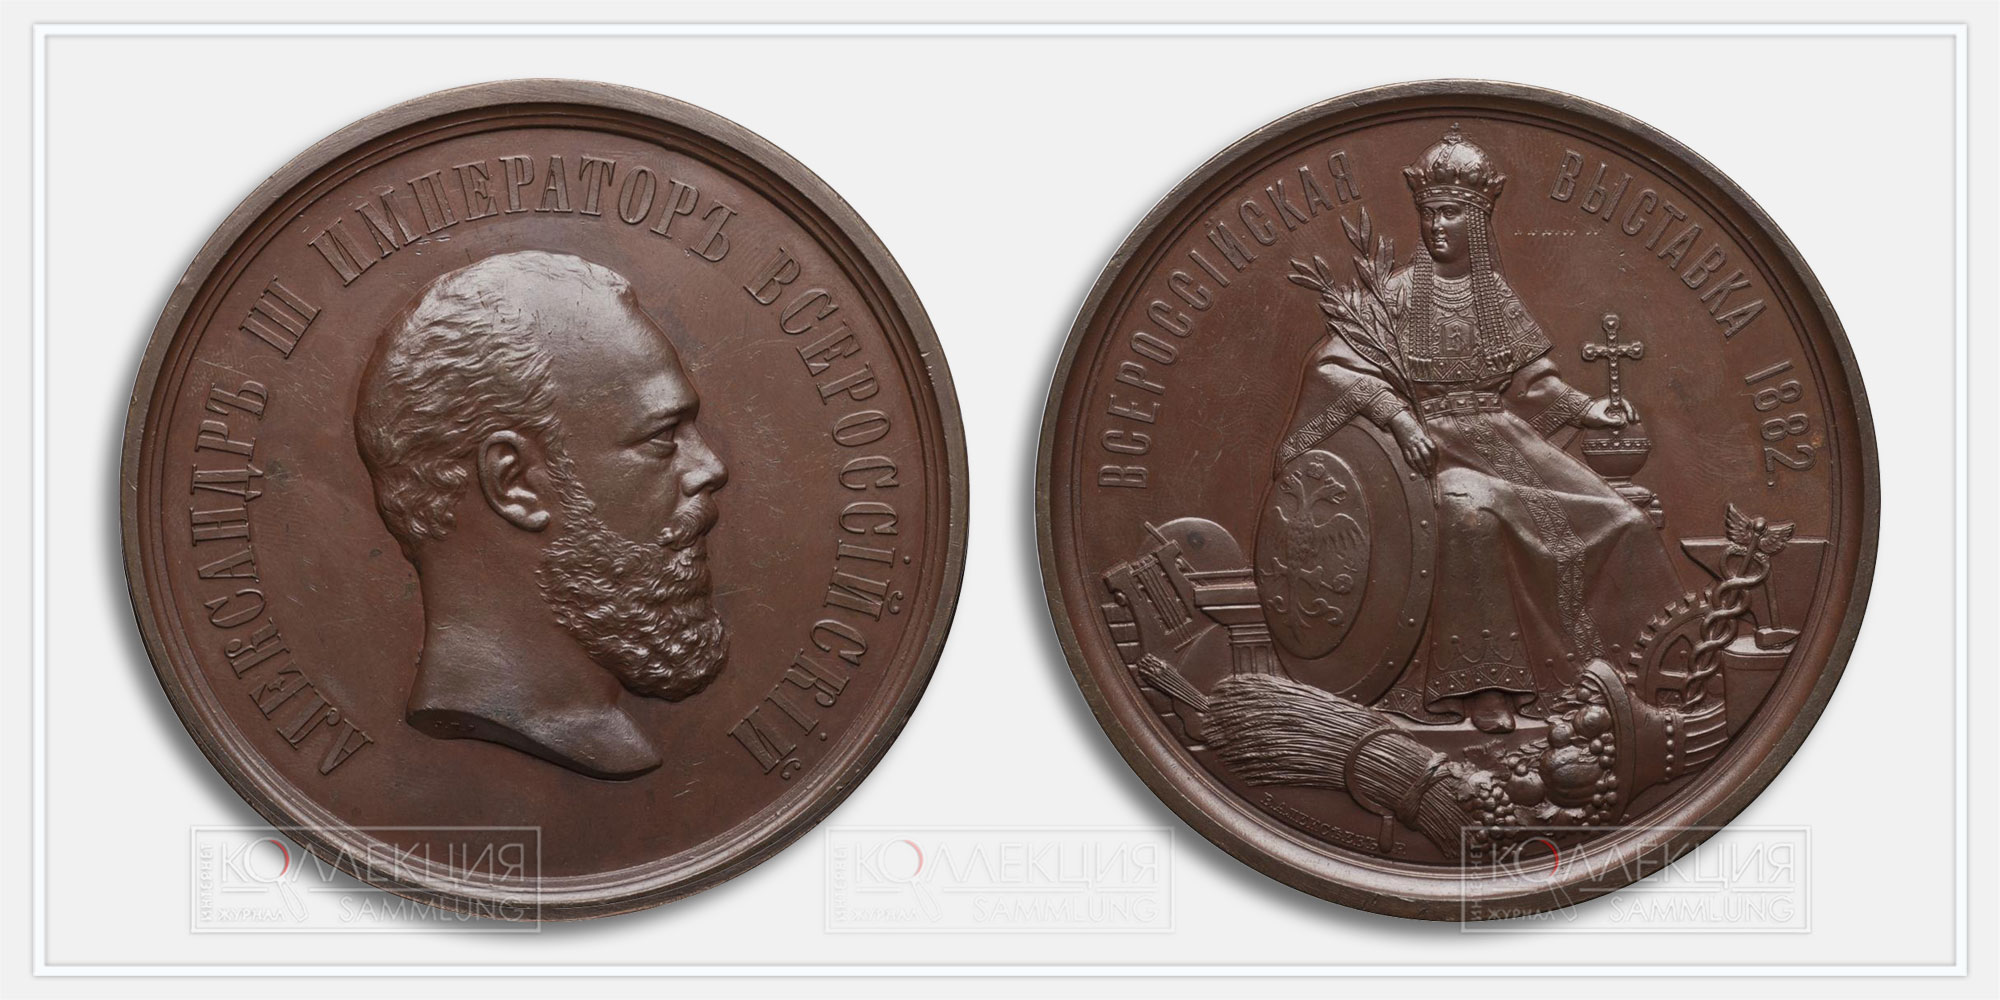 Бронзовая медаль Всероссийской художественно-промышленной выставки в Москве 1882 года. Александр III